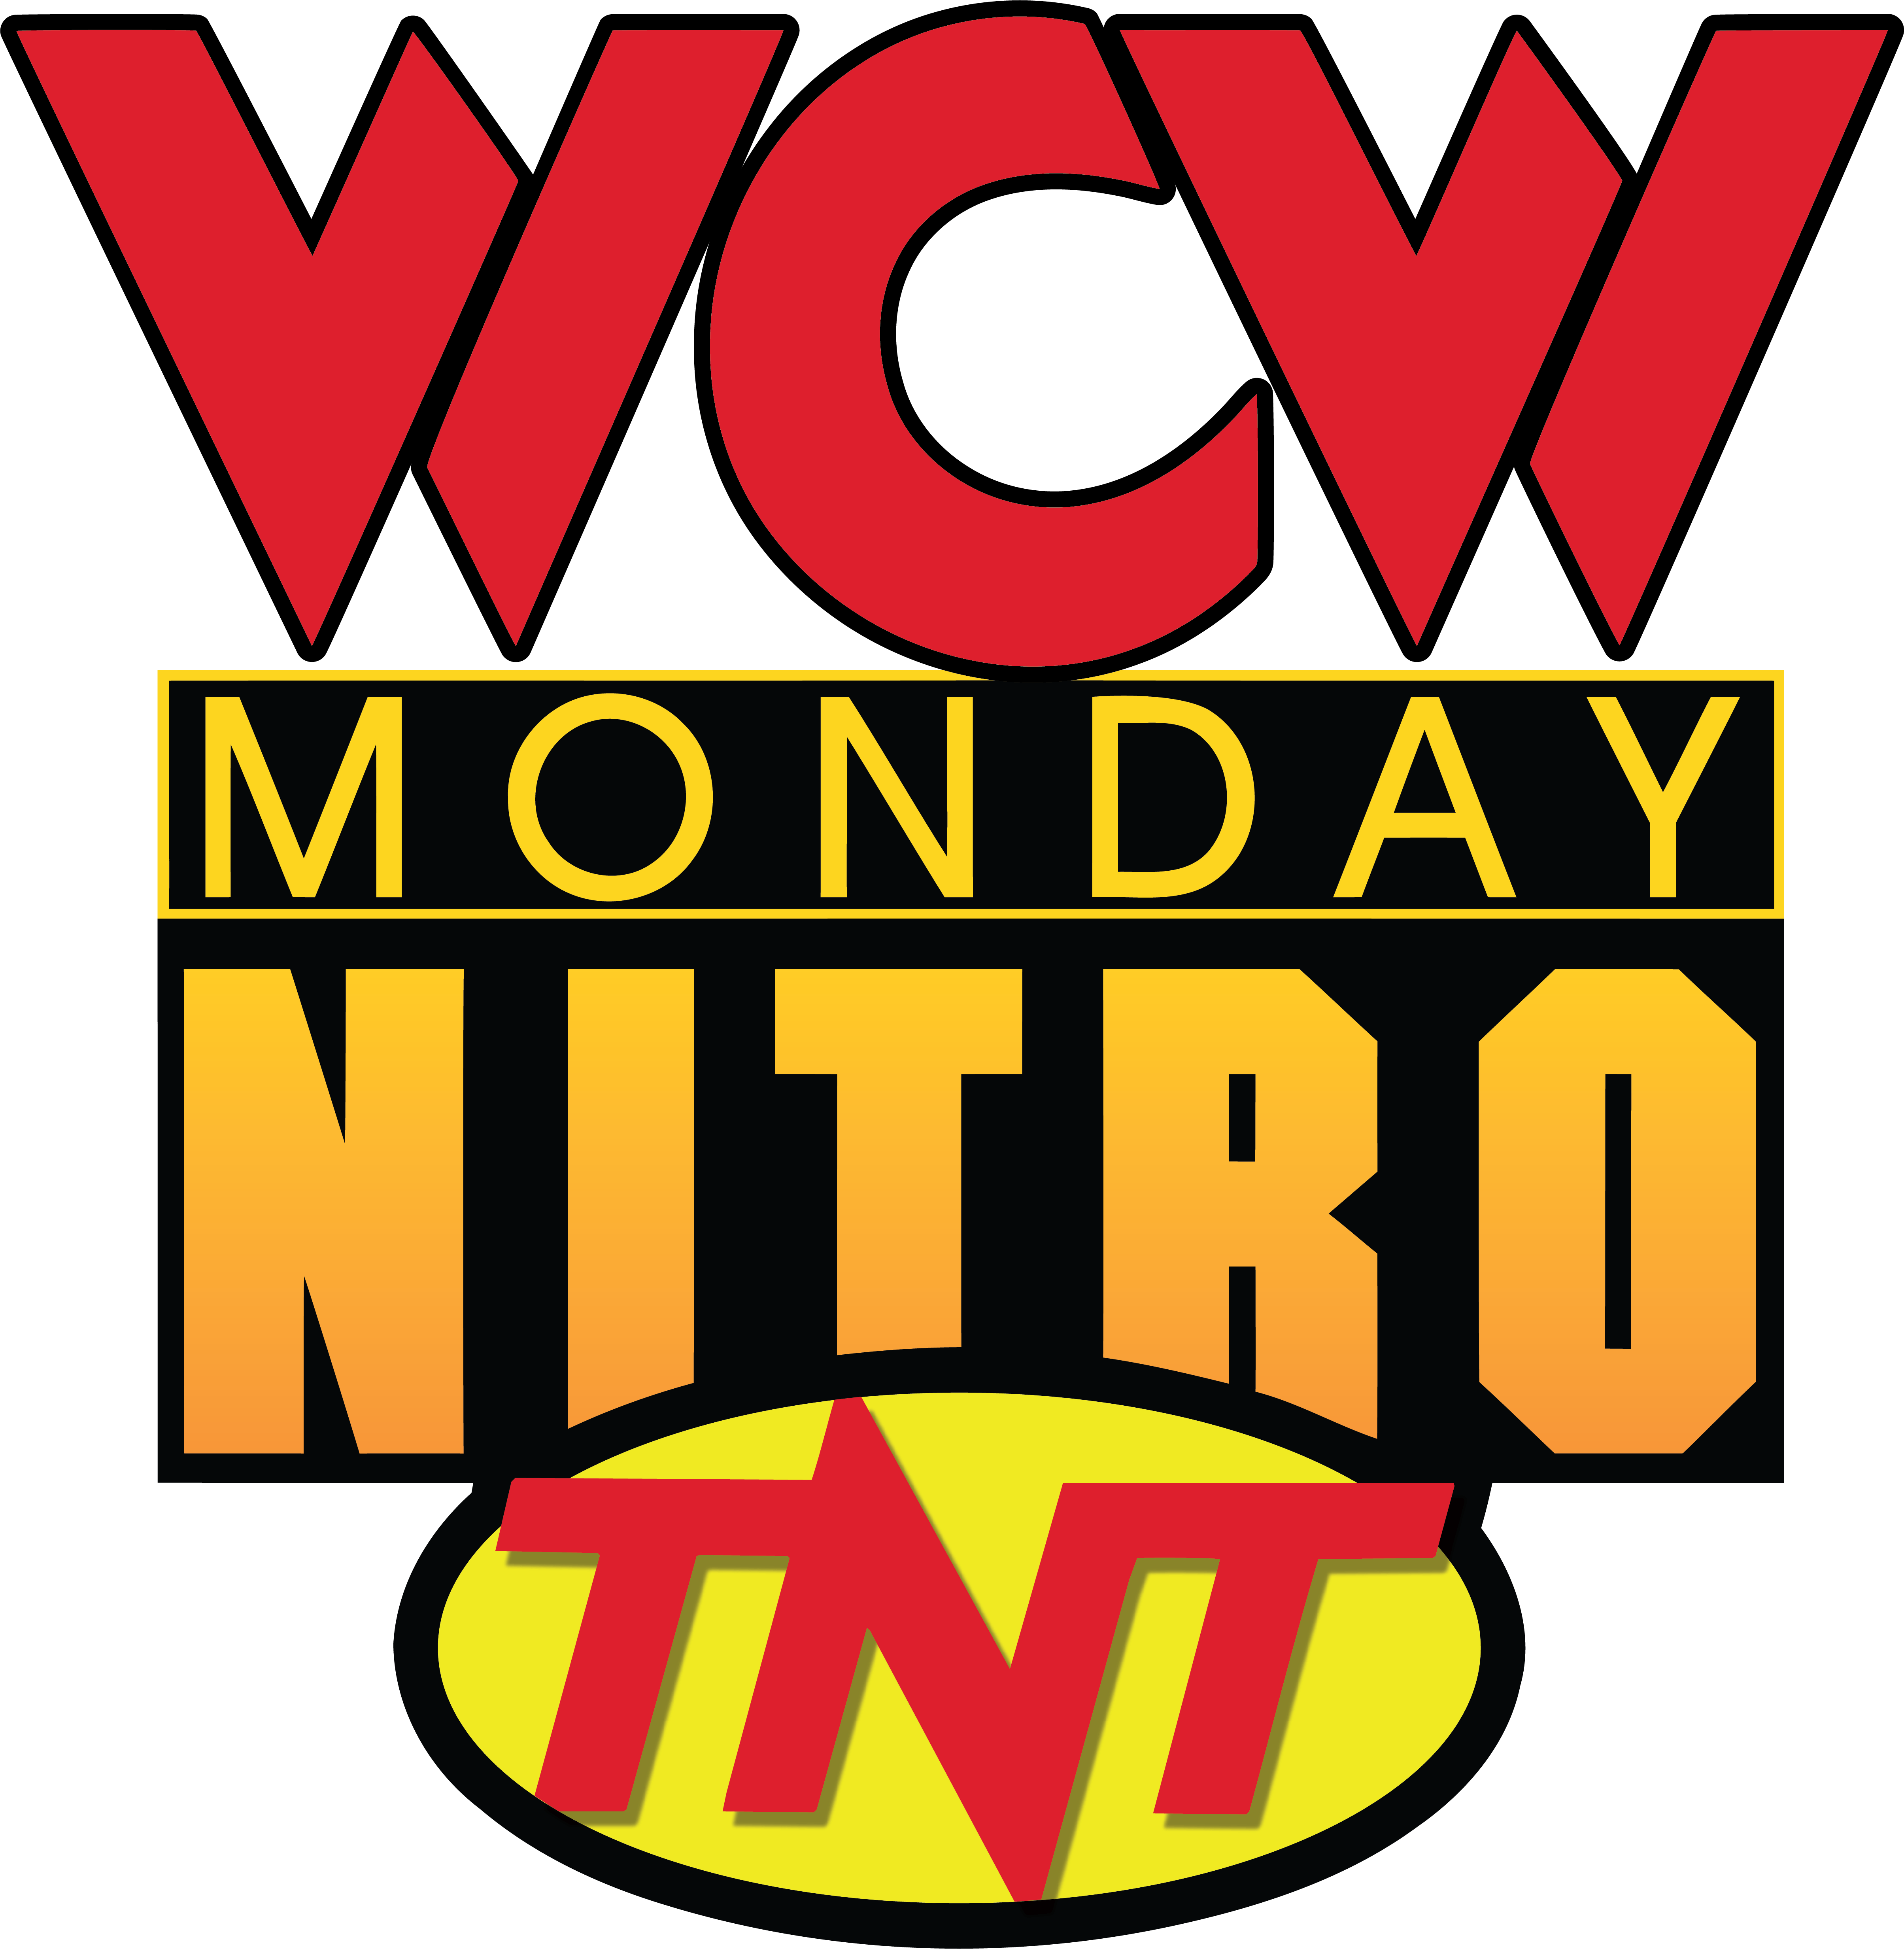 WCW Logo - World Championship Wrestling images WCW Monday Nitro 1'st Logo HD ...